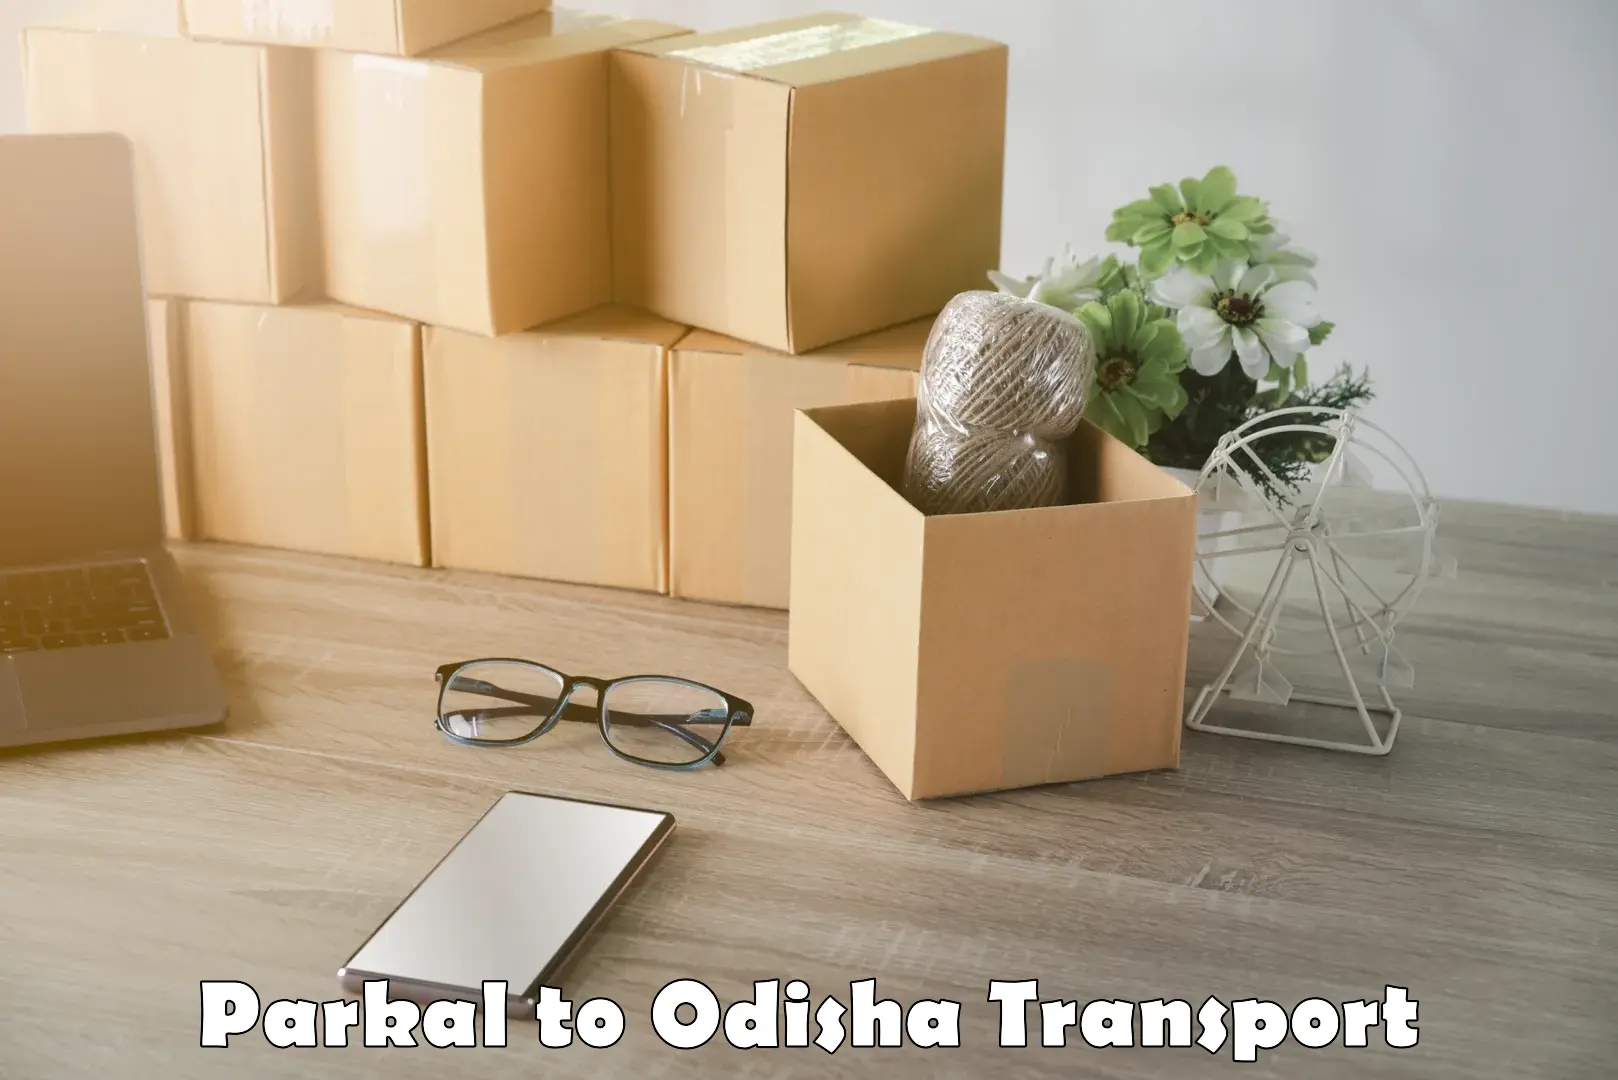 Commercial transport service Parkal to Odisha